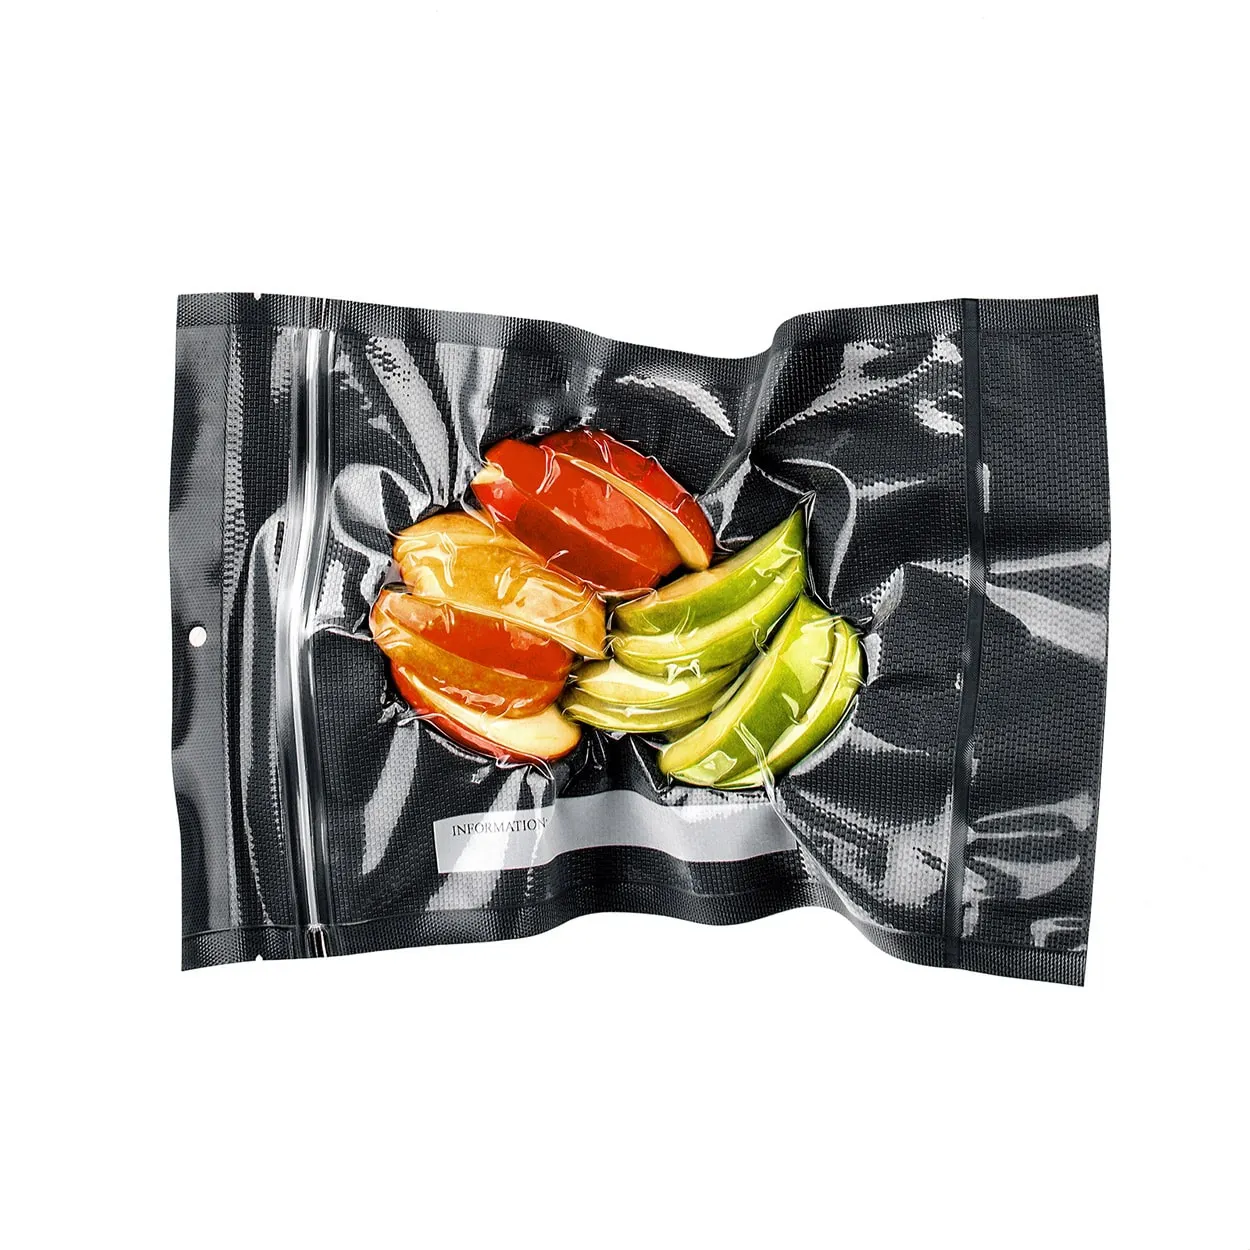 Muslimbolsas al Vacio carne tacchino Nylon stampa stoccaggio imballaggio personalizzato vuoto imballaggio in plastica sigillante per alimenti sacchetto sottovuoto